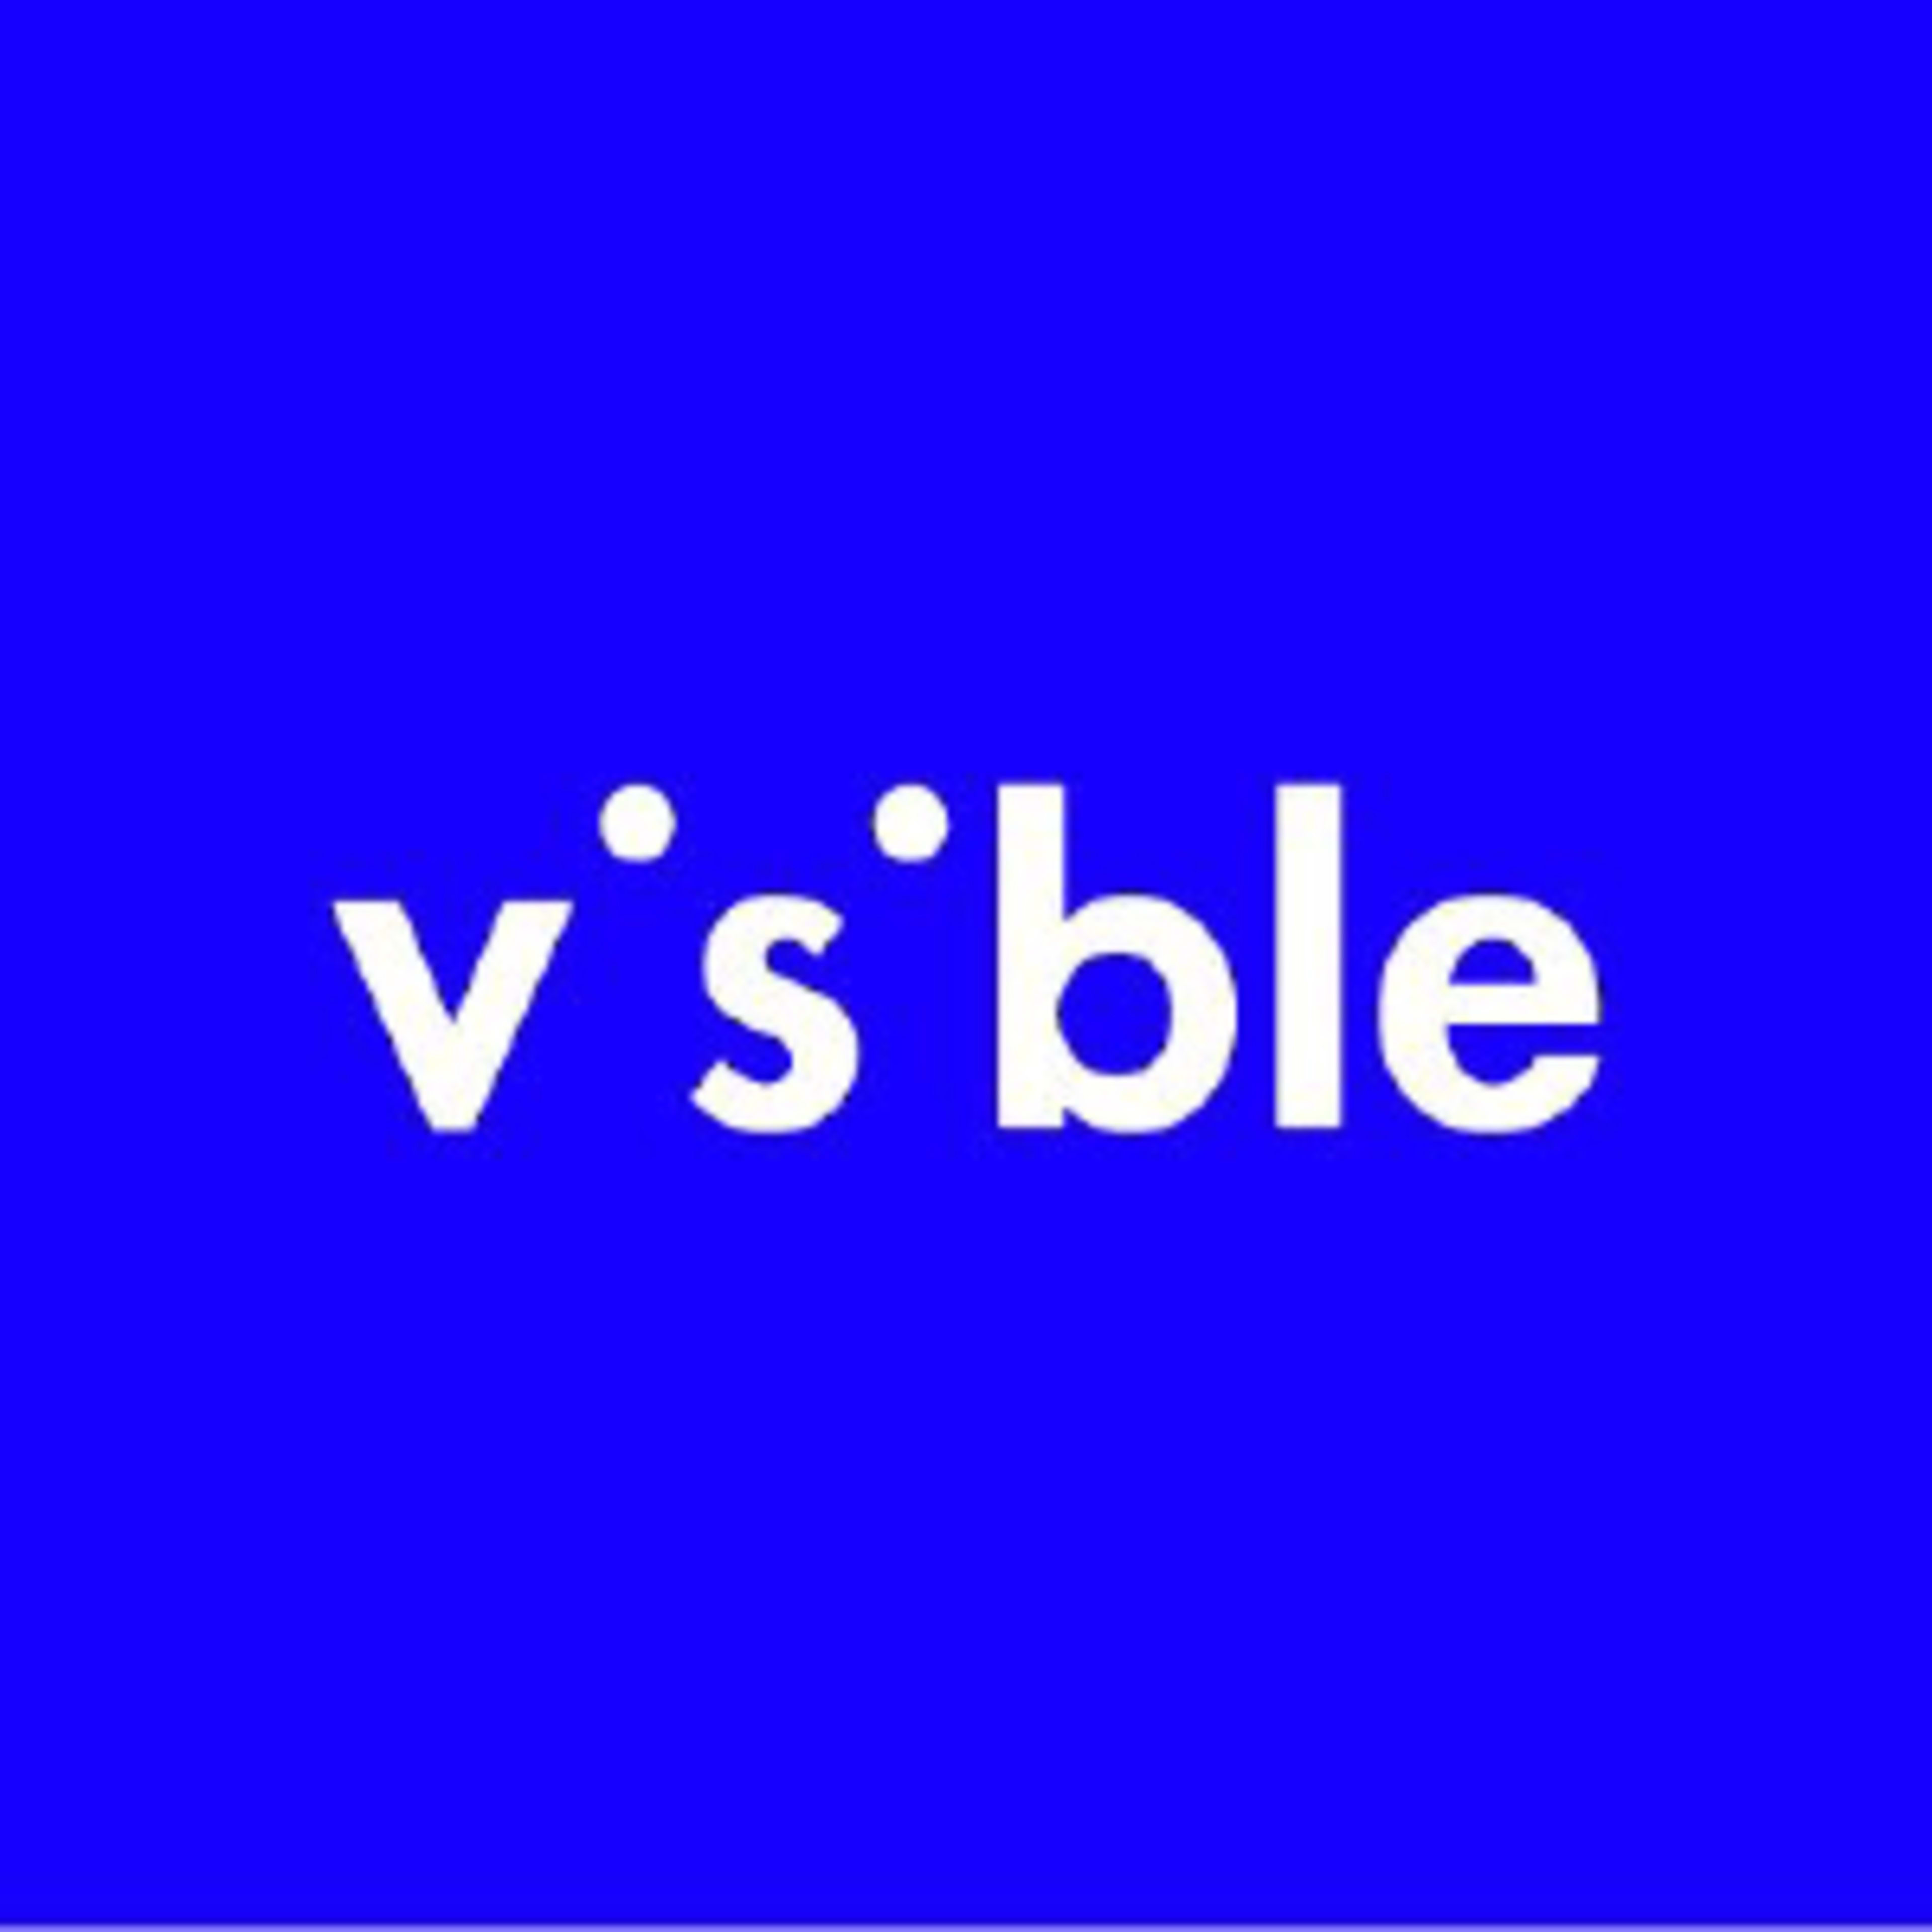 Visible Code